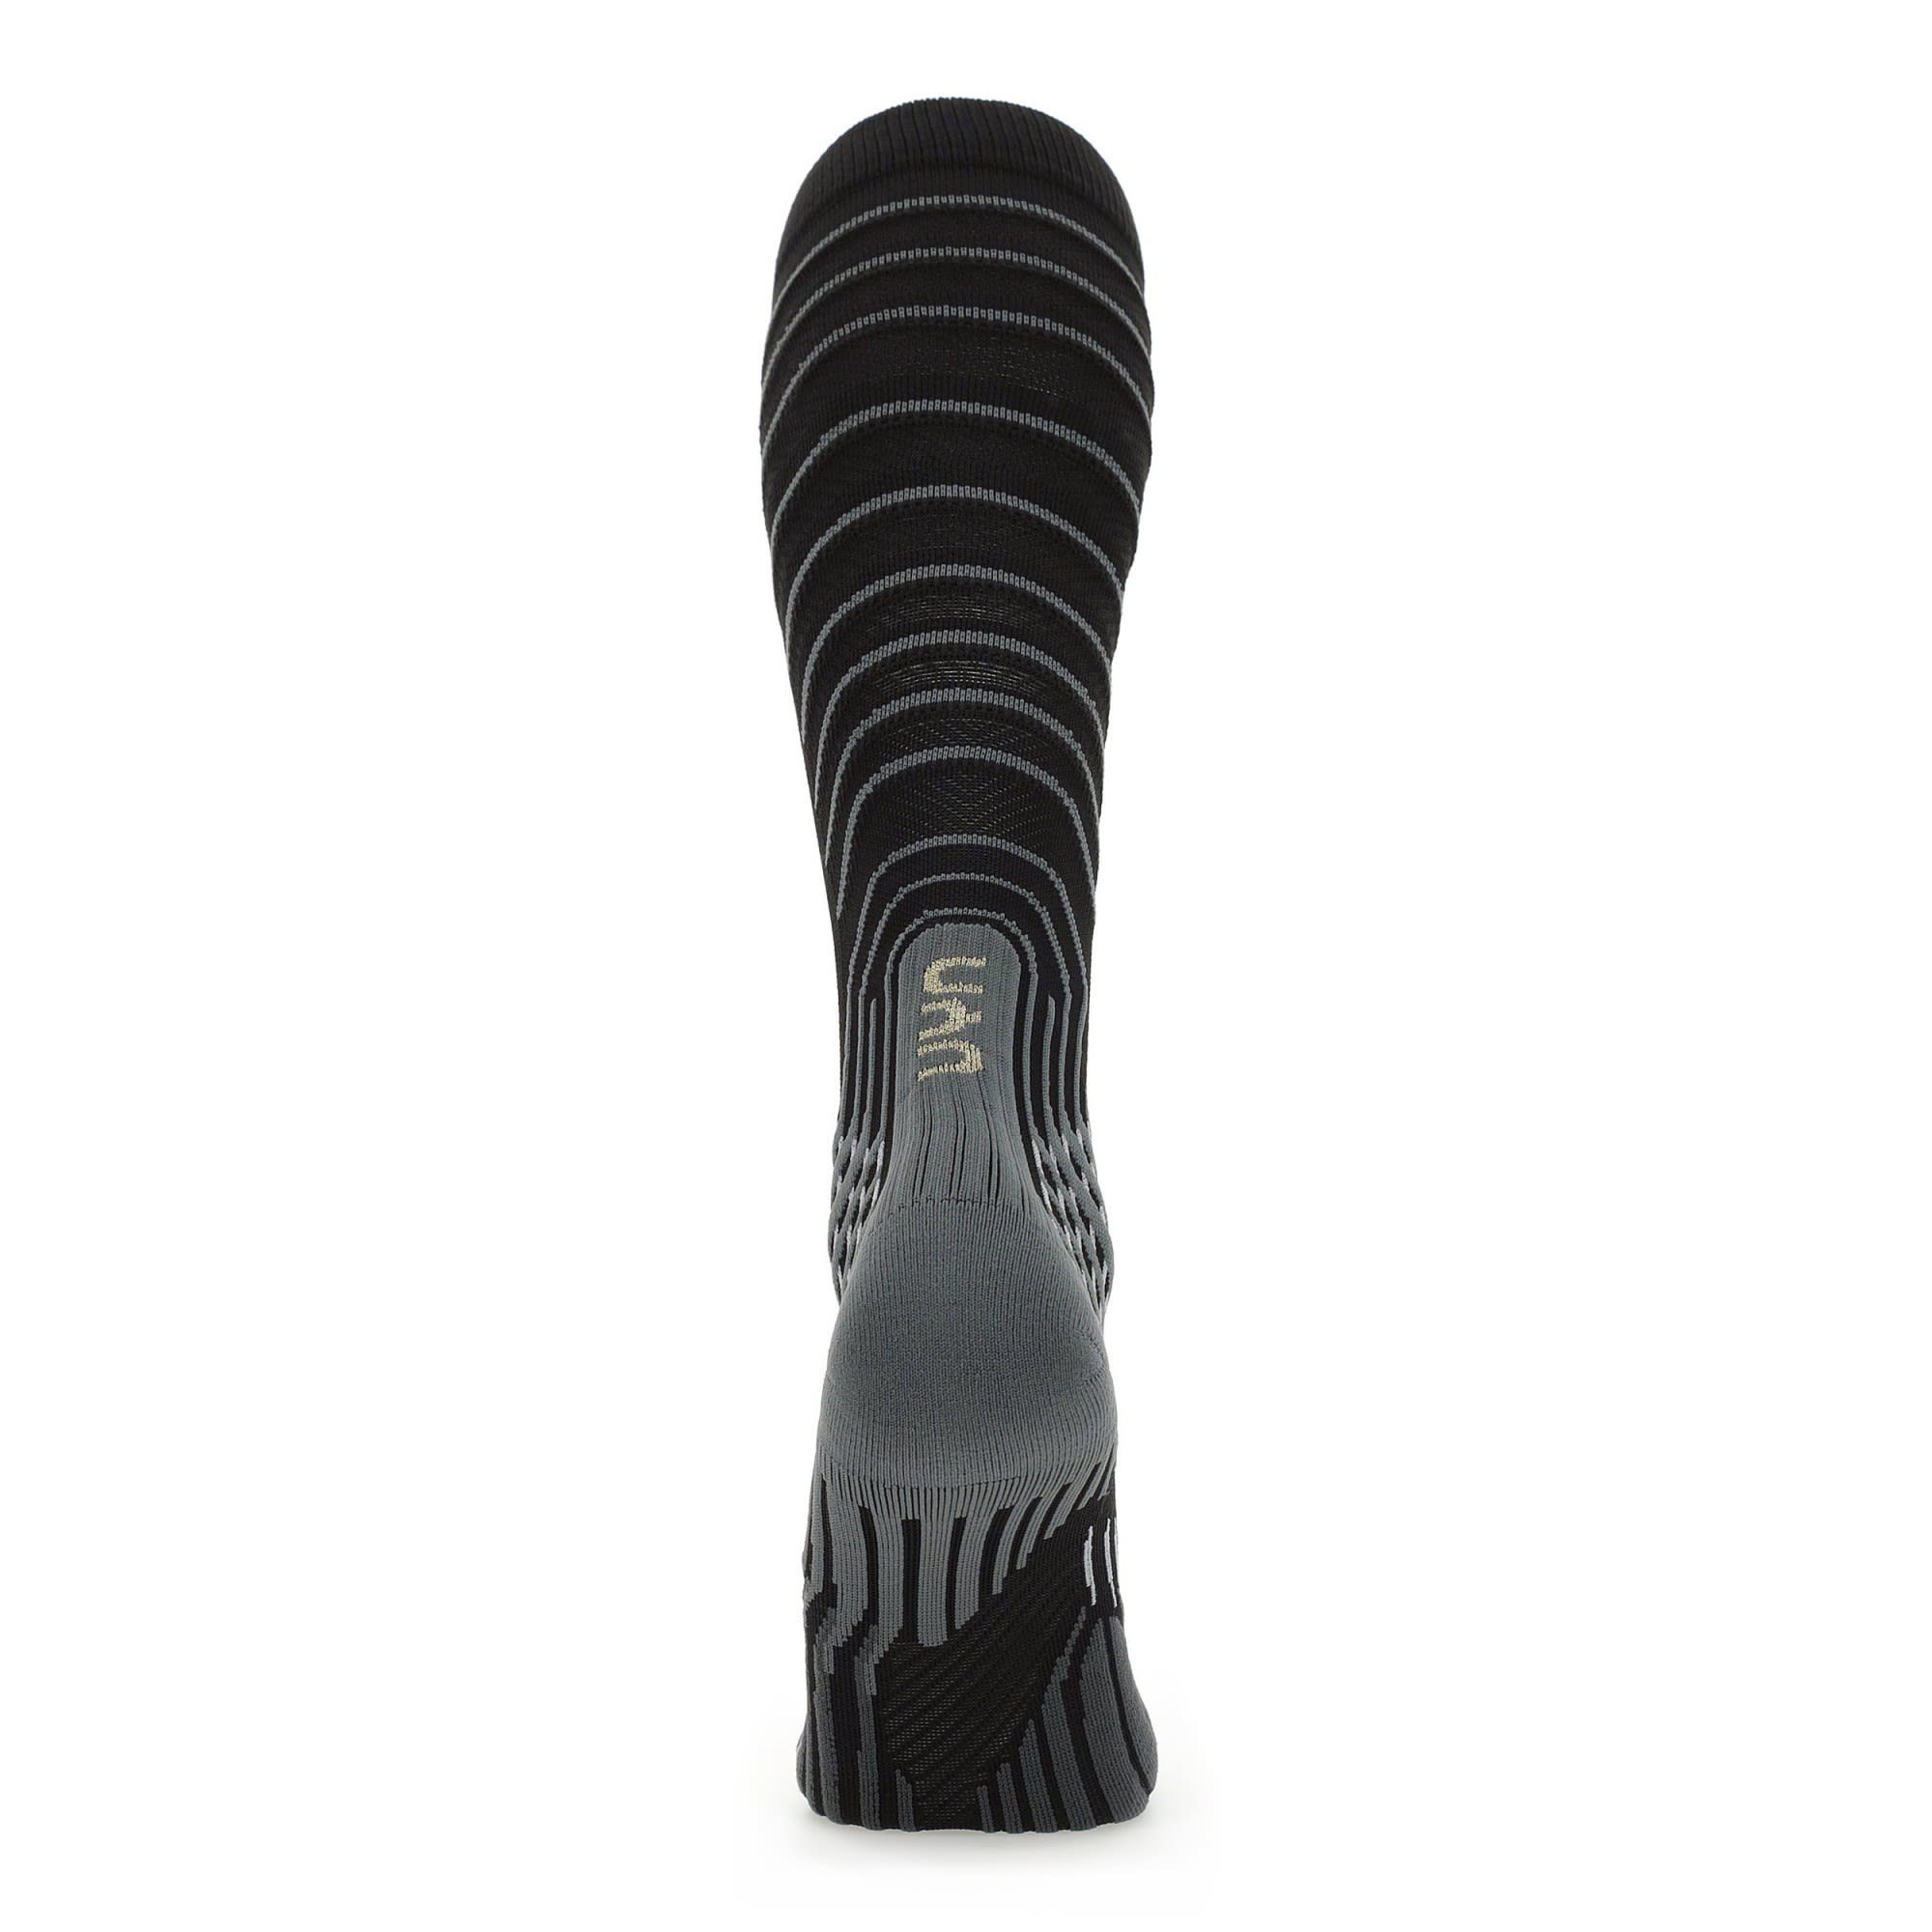 Socks Damen Black W Run UYN 0.0 Grey - Onepiece Thermosocken Uyn Compression